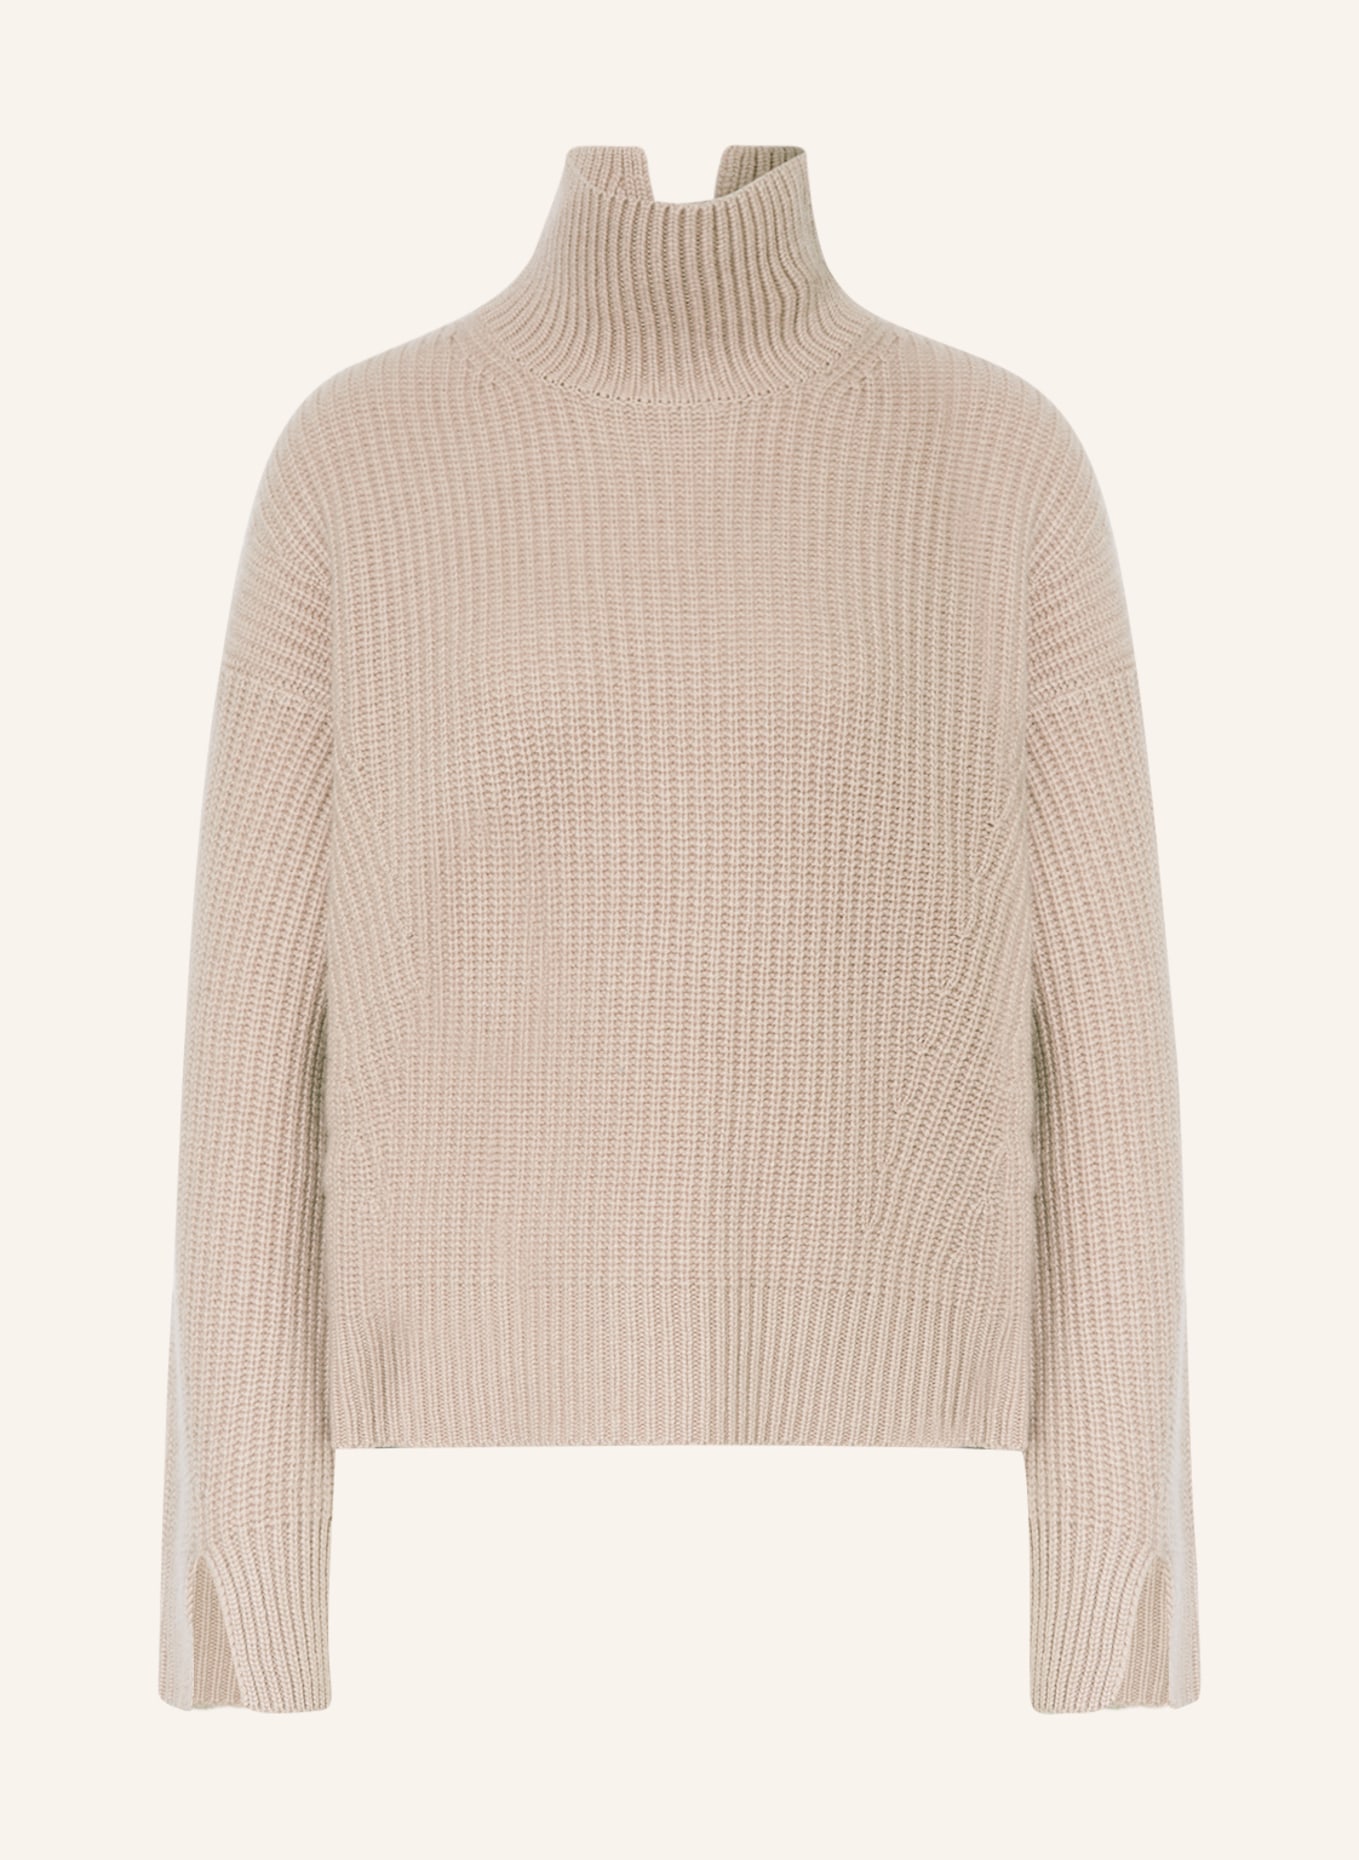 SMINFINITY Cashmere-Pullover, Farbe: TAUPE (Bild 1)